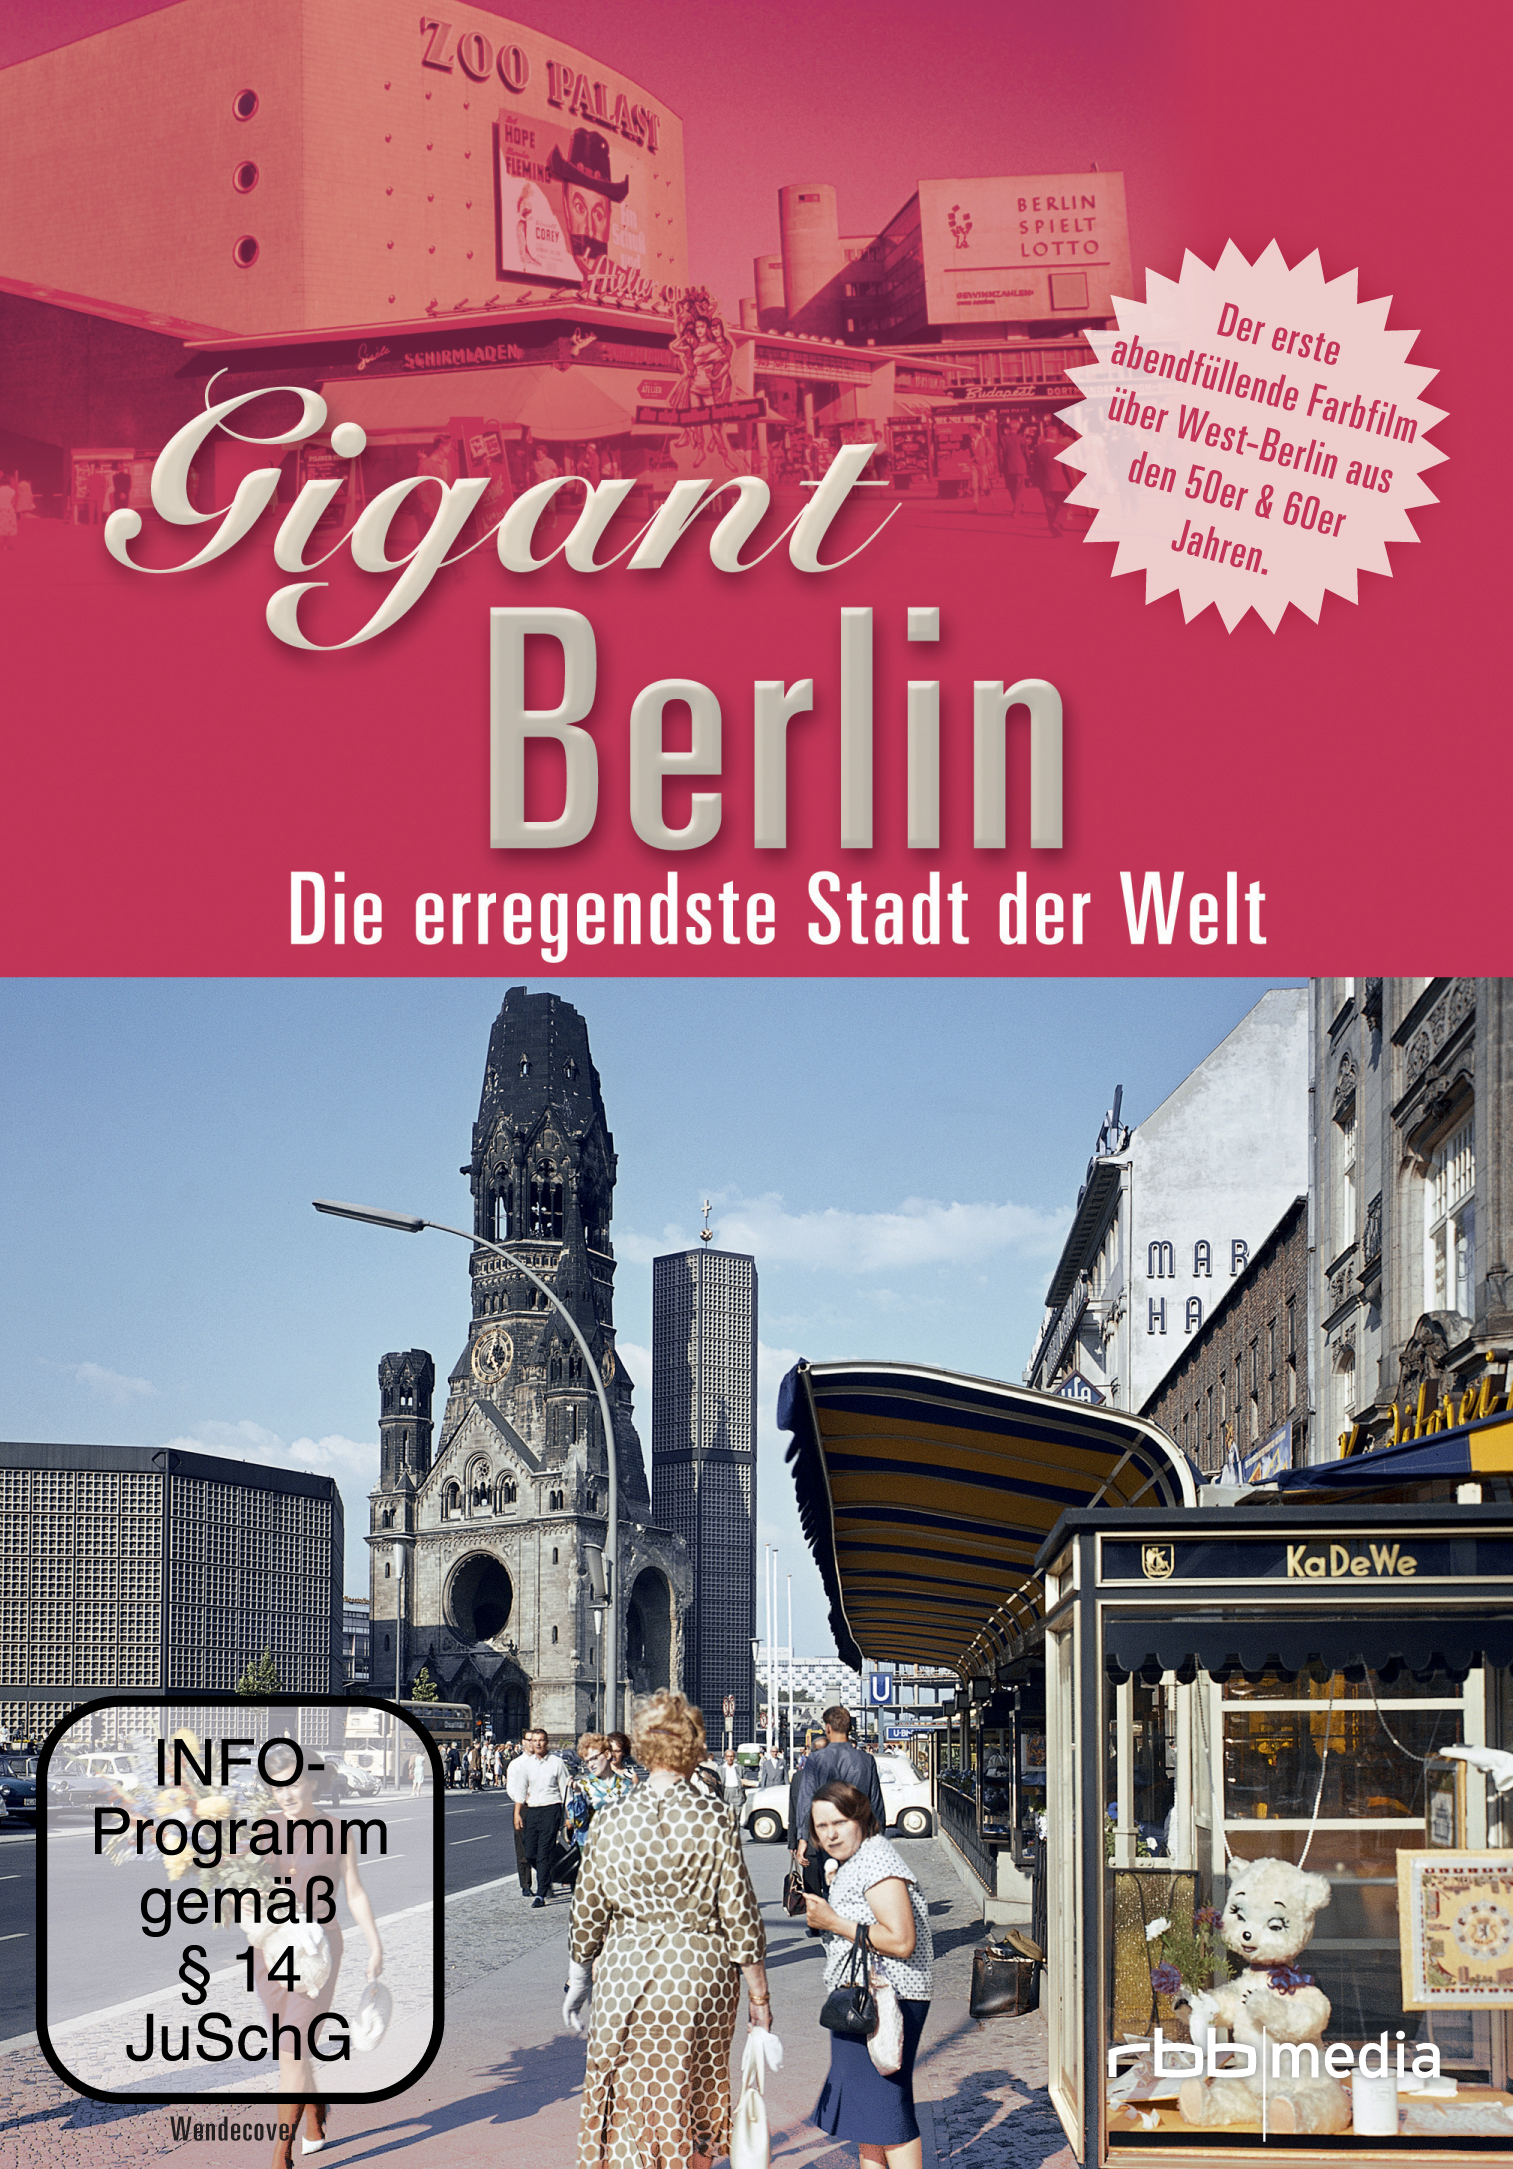 Die der Gigant - Welt DVD Berlin erregendeste Stadt